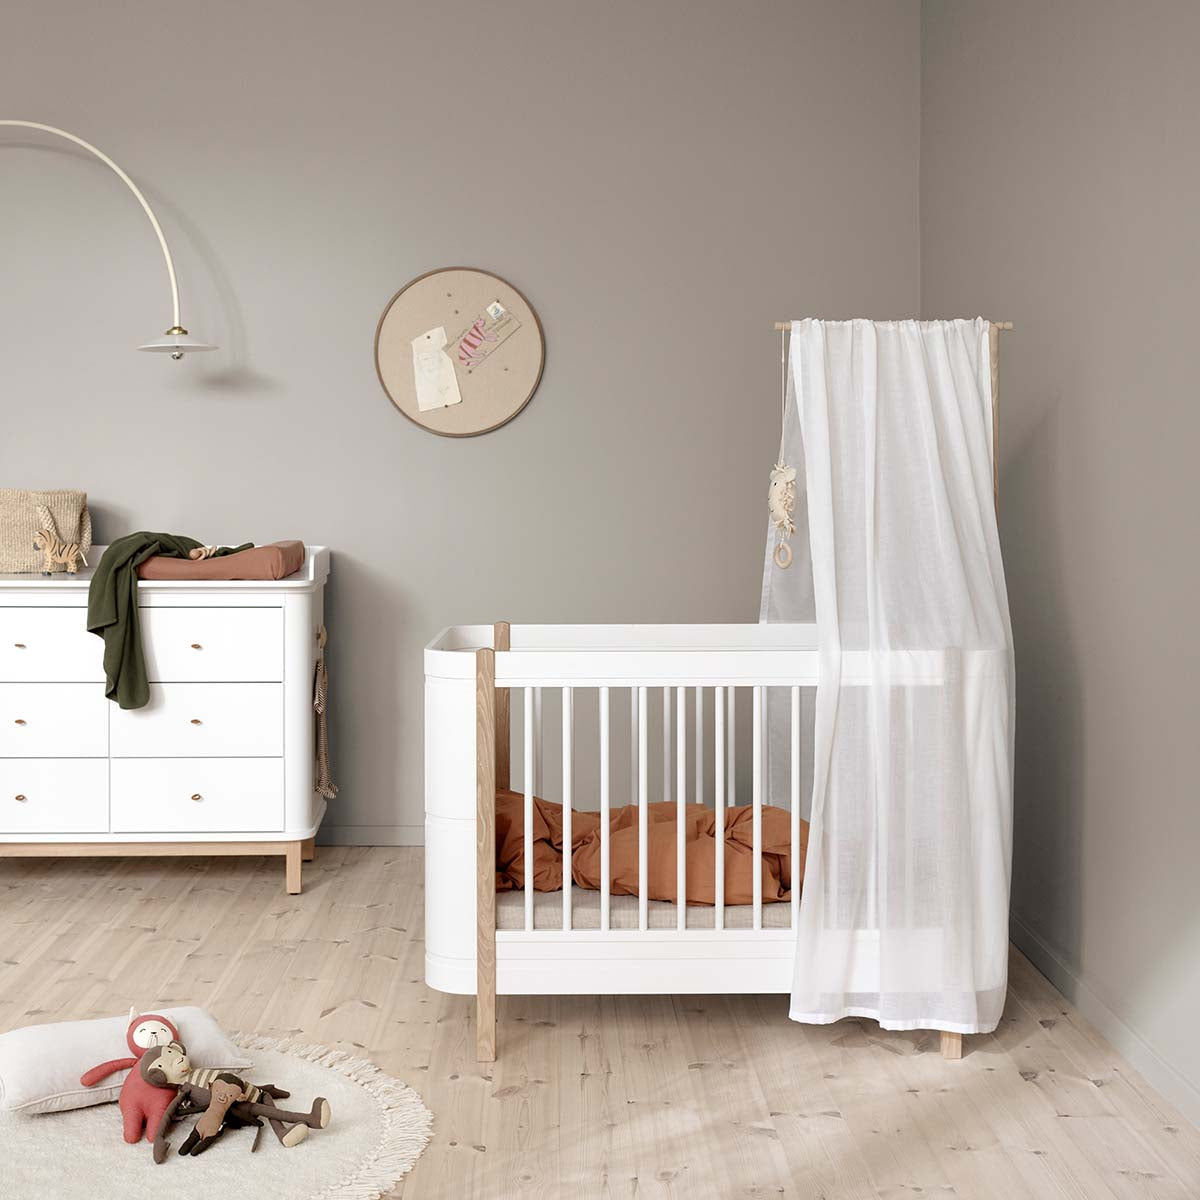 Babymöbel und Kindermöbel von Oliver Furniture, Quax, Leander, Moonboon, bednest